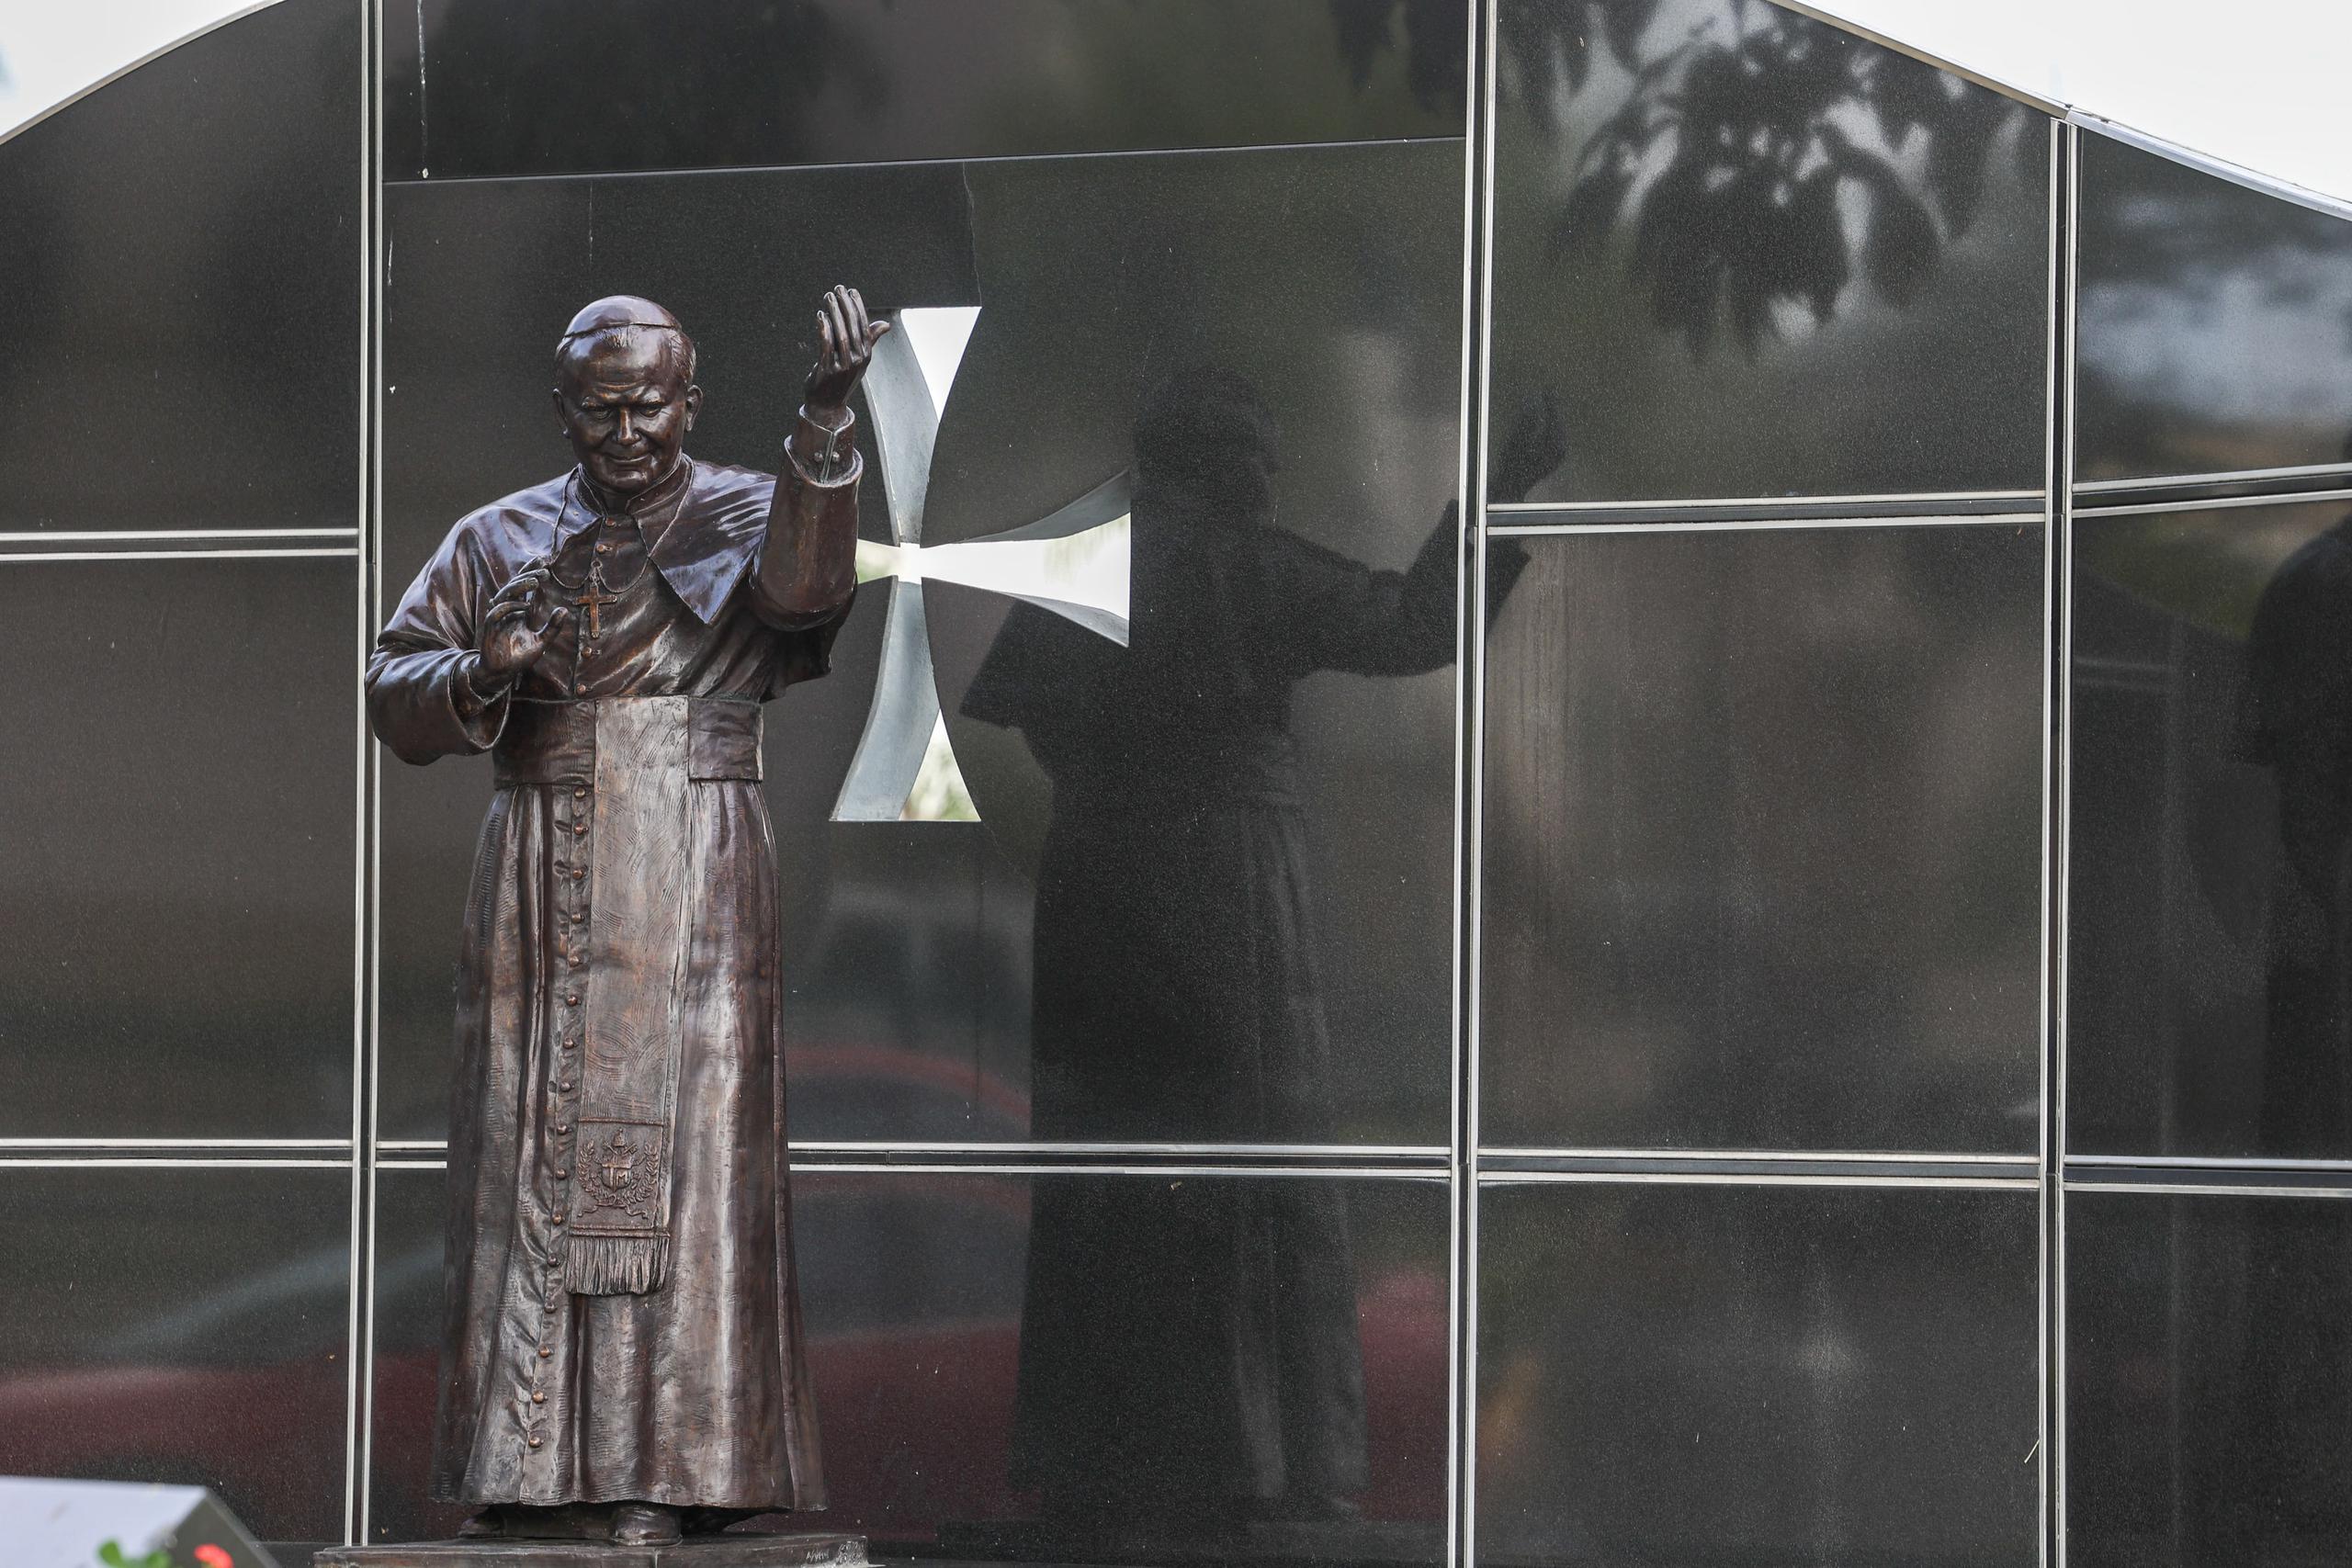 Tras la visita del papa Juan Pablo II a Puerto Rico en 1984, la Fundación Plaza Las Américas conmemoró el evento con una escultura hecha en bronce, que está ubicada aledaña al centro comercial, donde  ofició una misa.